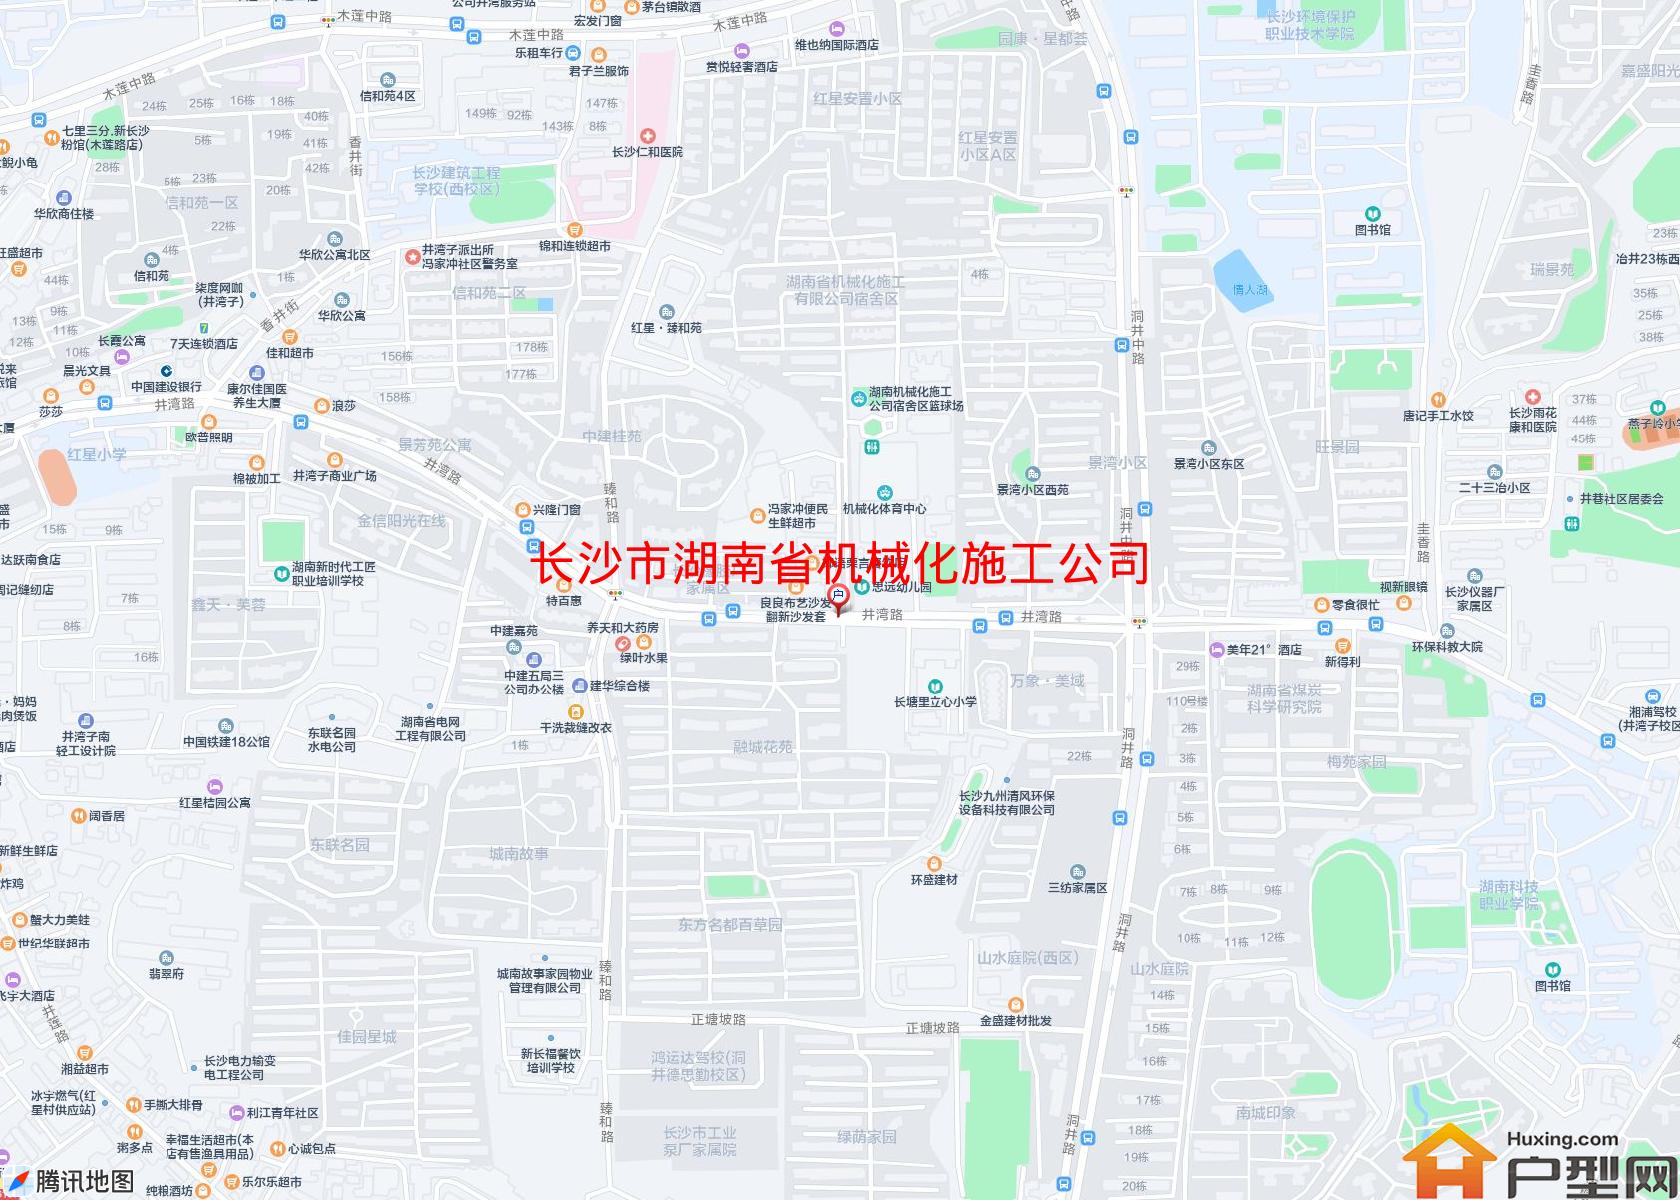 湖南省机械化施工公司宿舍区小区 - 户型网